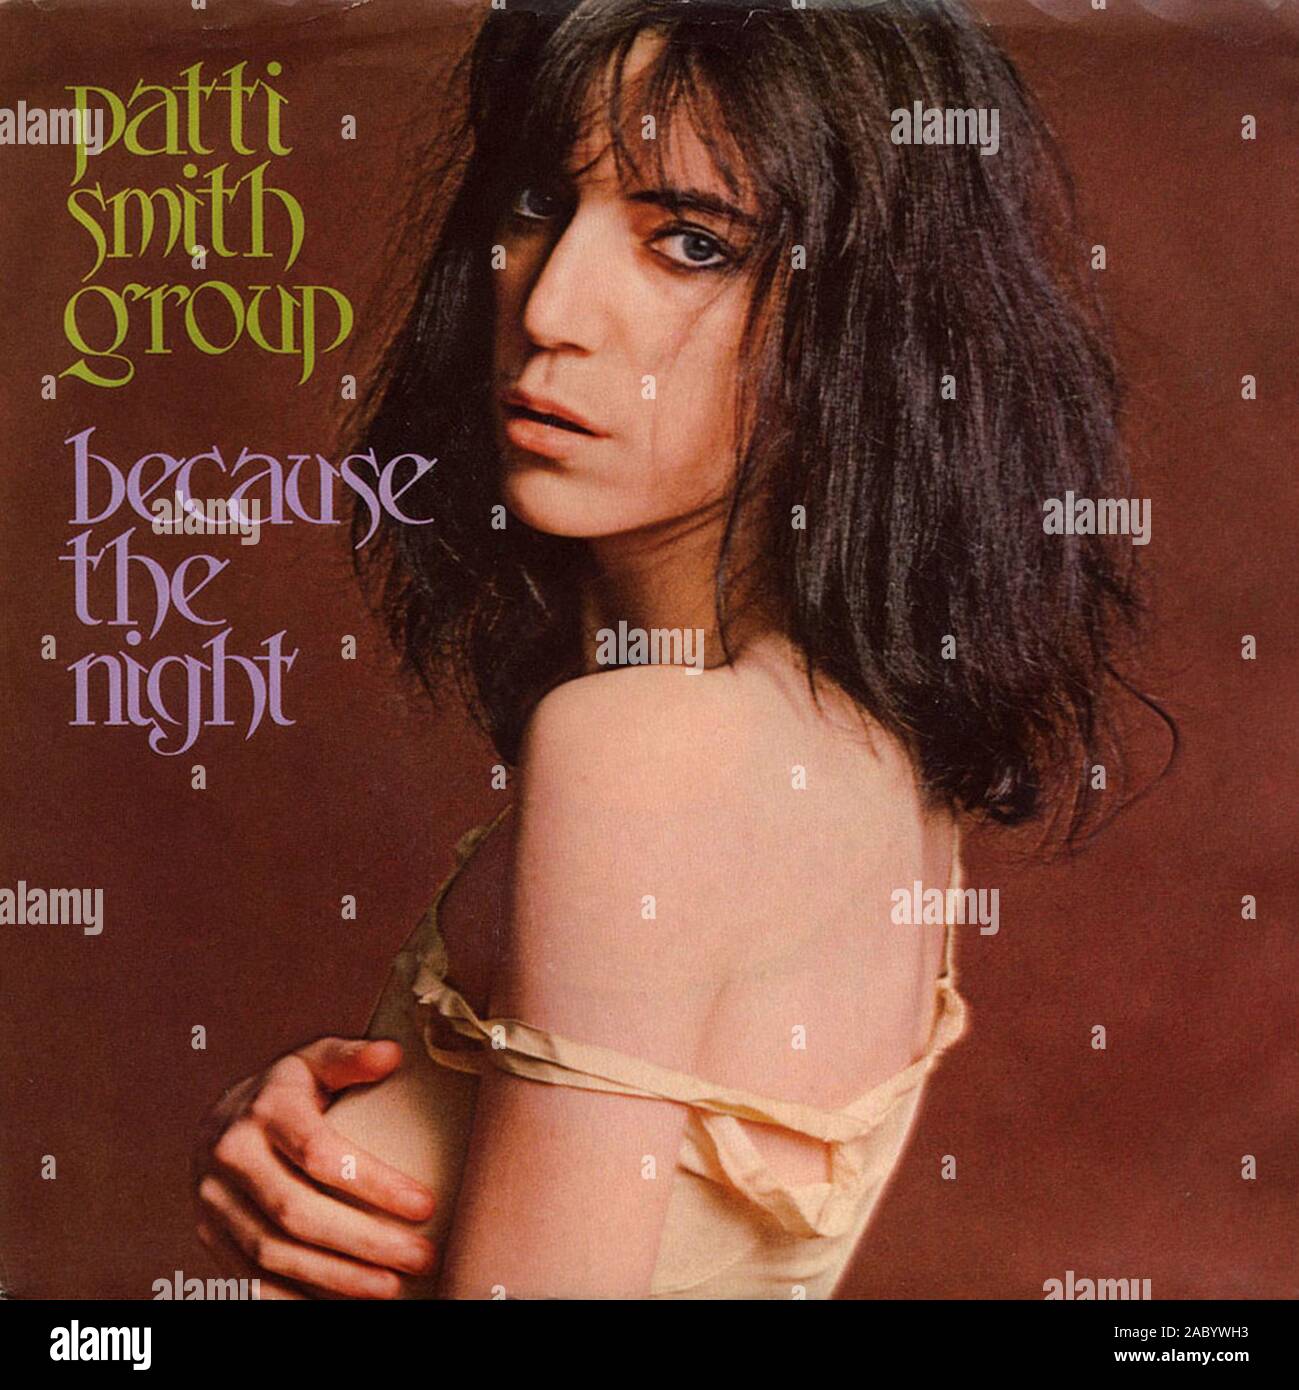 Patti Smith Group - parce que la nuit - couverture de l'album vinyle vintage Banque D'Images